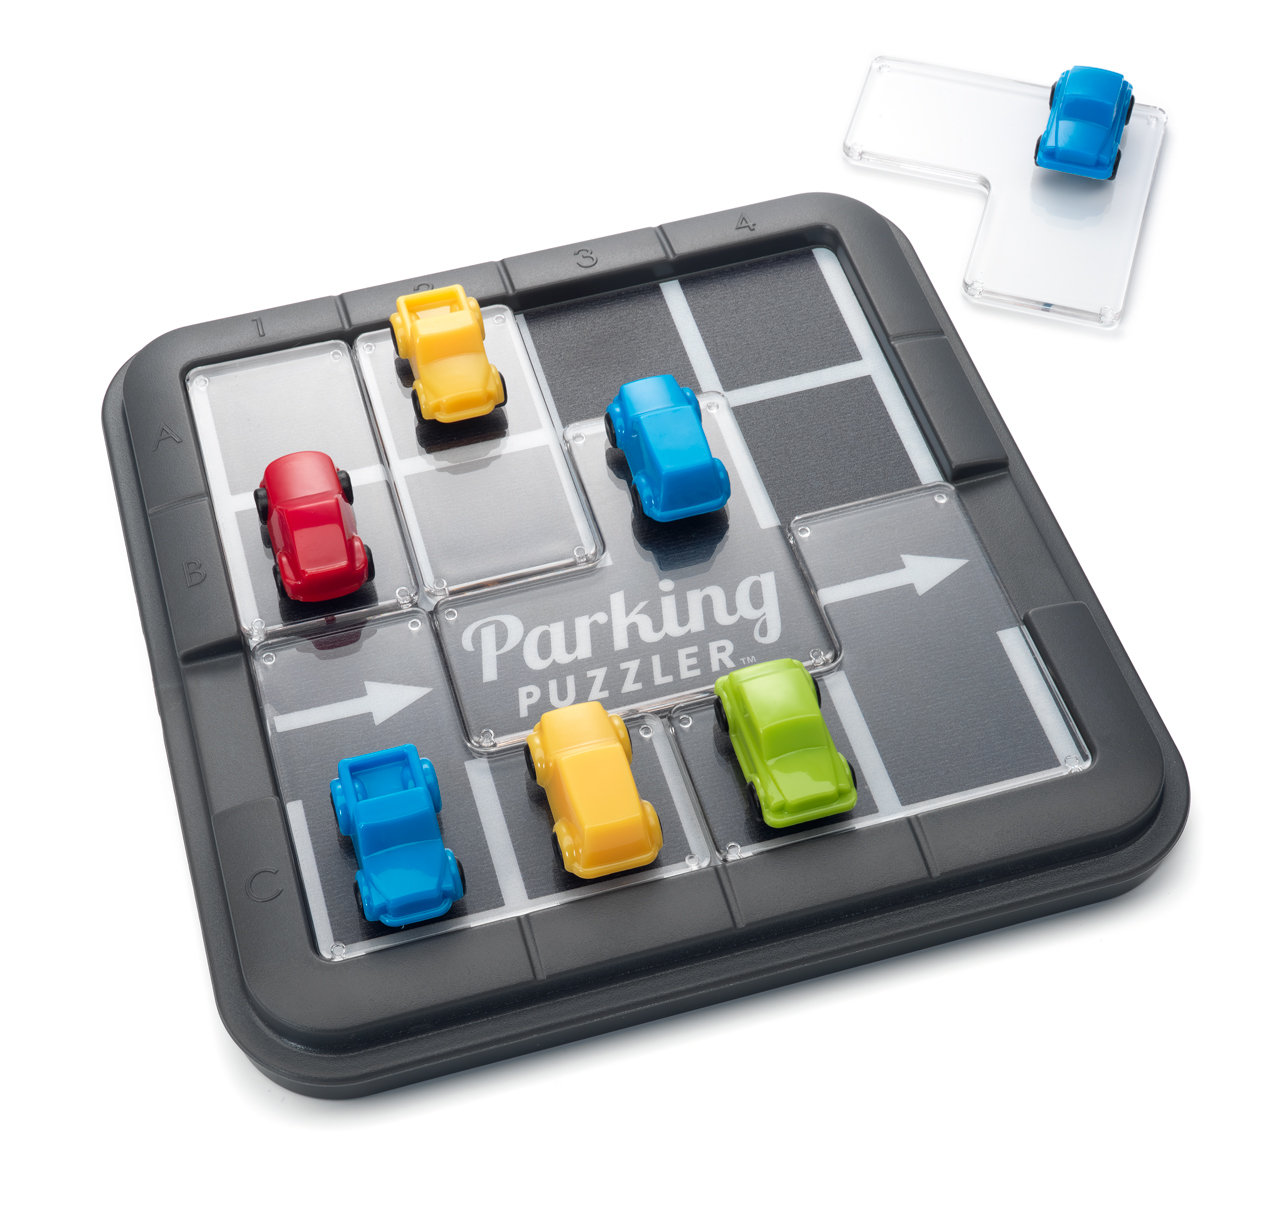 SMART GAMES Parking Puzzler Puzzle